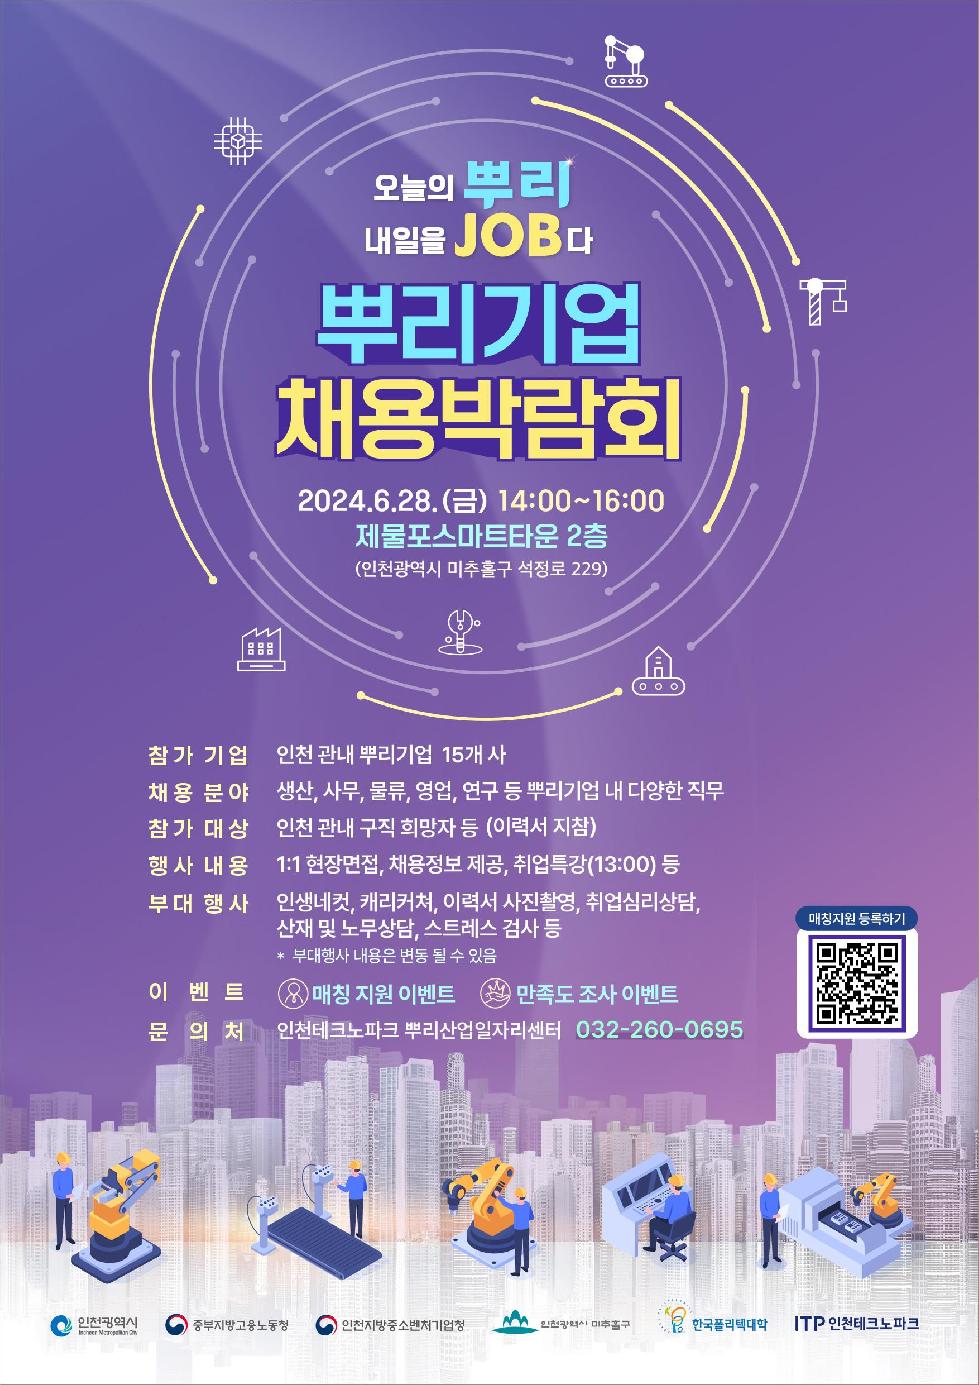 인천시 뿌리기업 채용박람회, 28일 제물포스마트타운서 개최